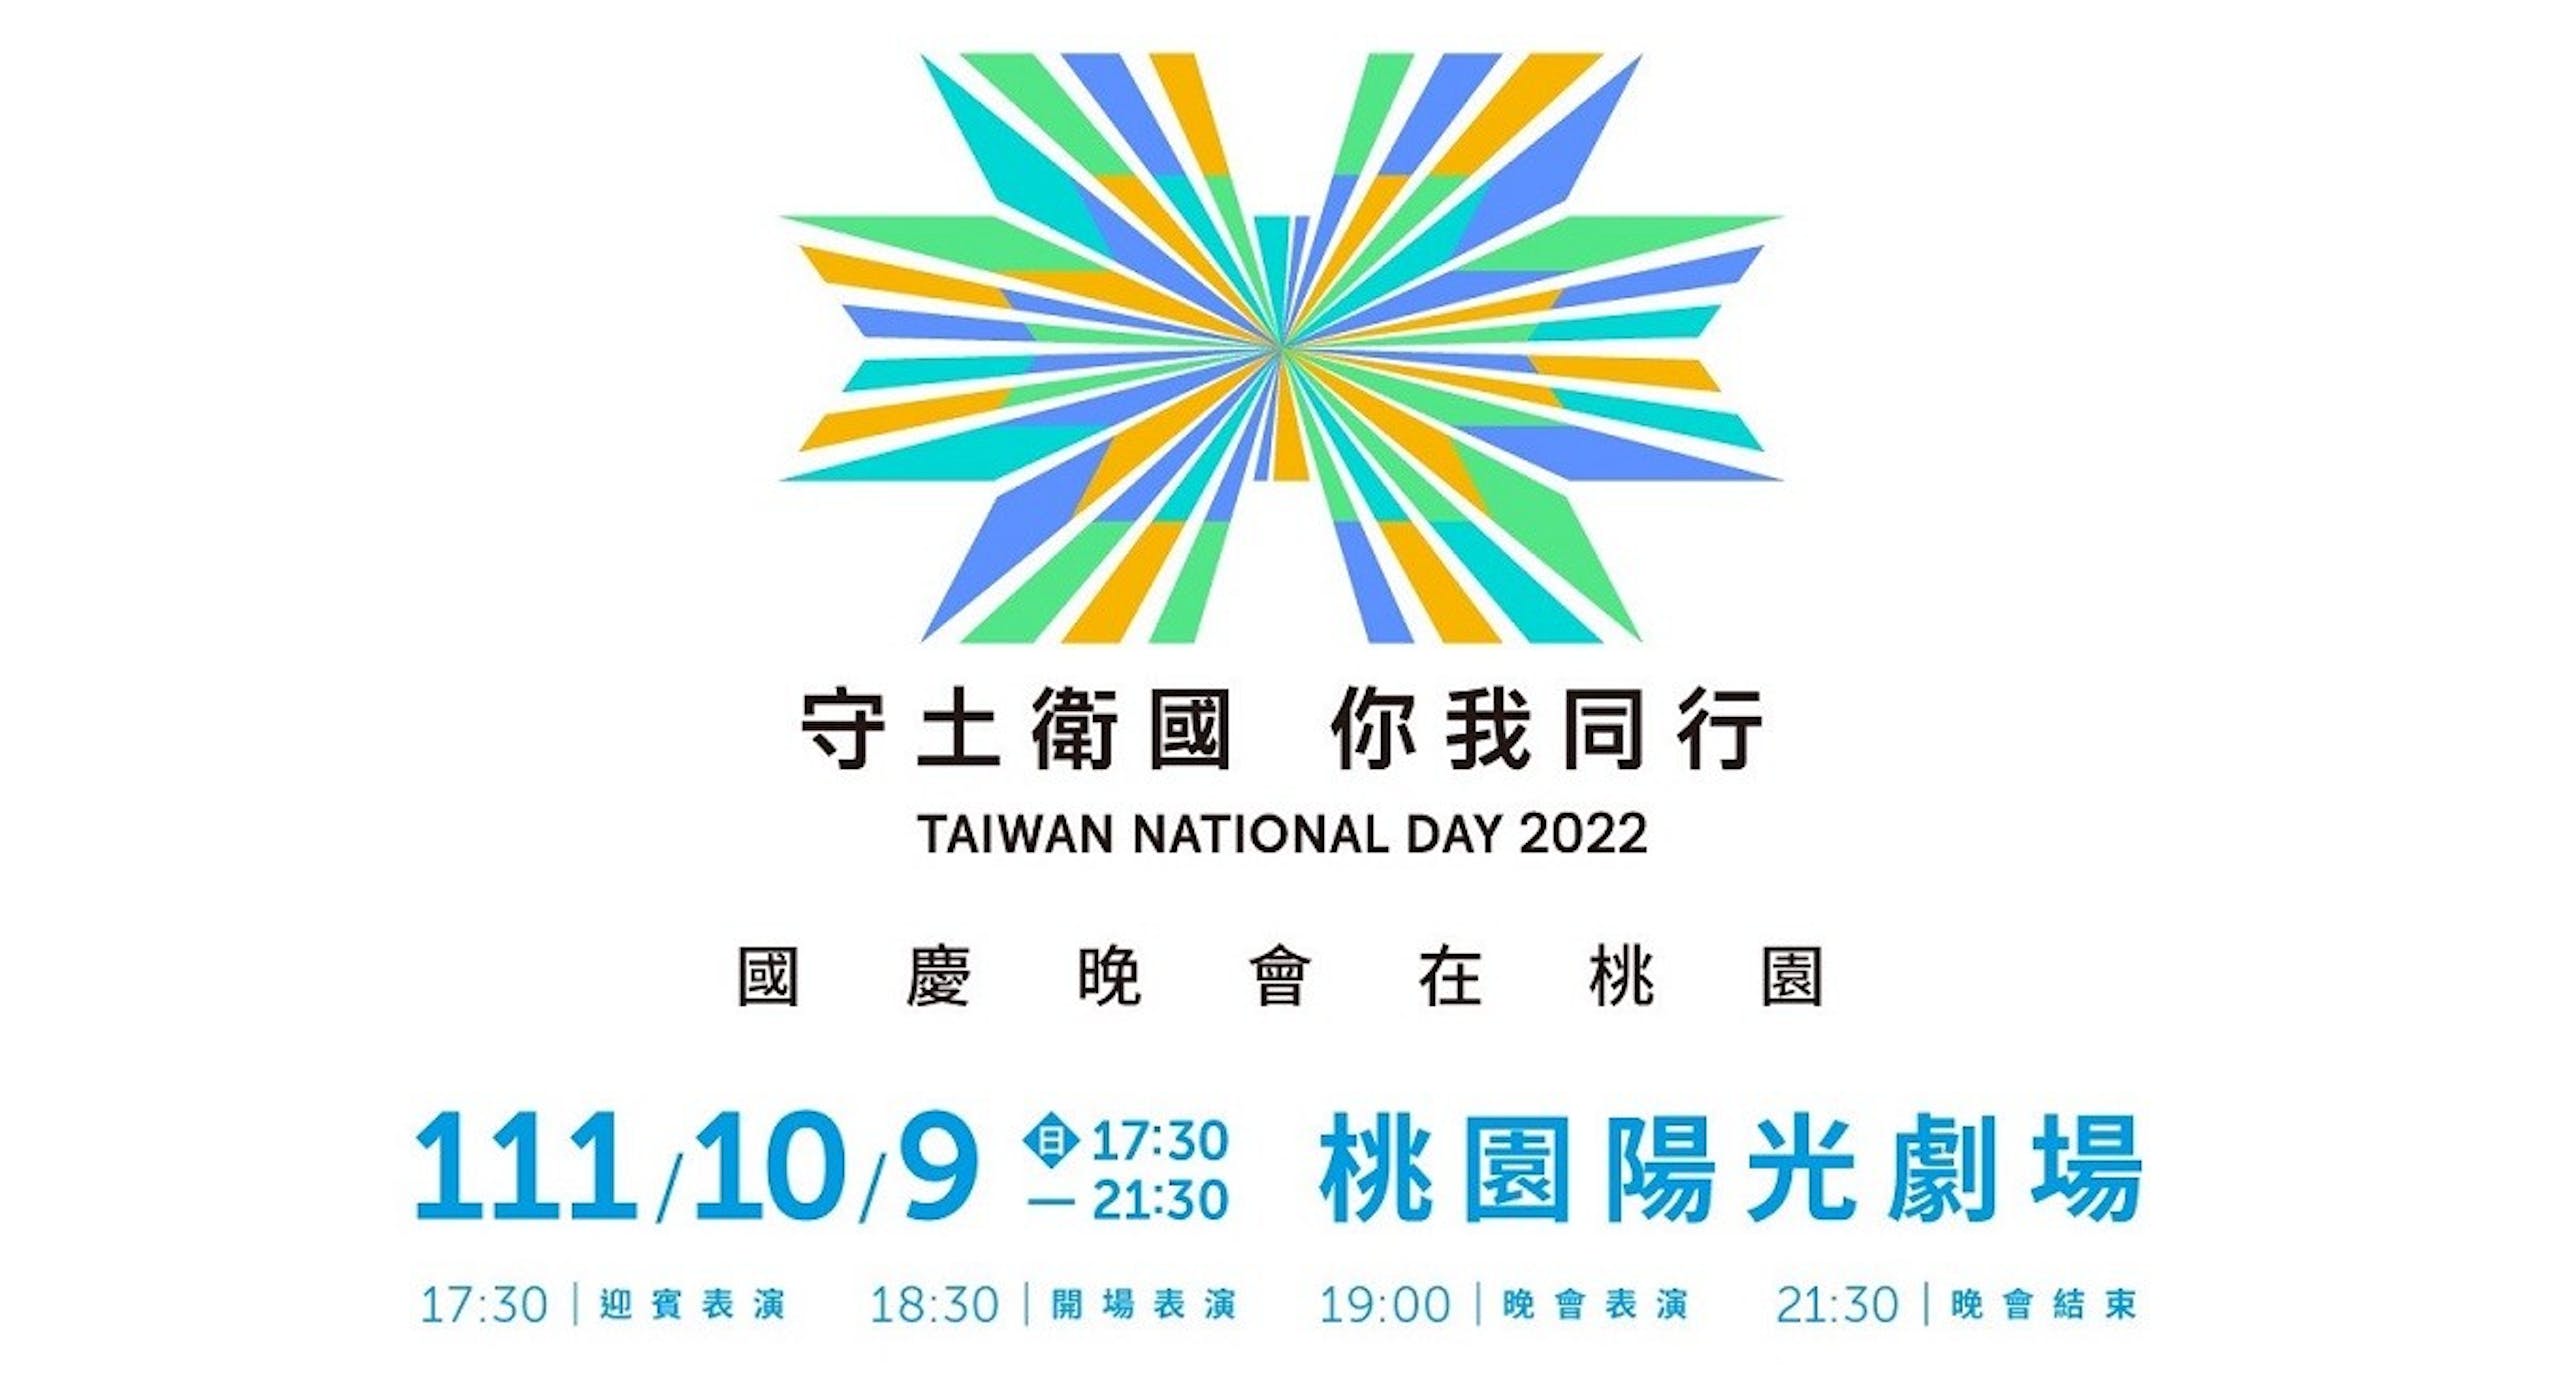 照片中提到了*、守土衛國 你我同行、TAIWAN NATIONAL DAY 2022，跟社區第一信用社有關，包含了2022國慶主視覺、台灣、國慶日、國慶日、日本